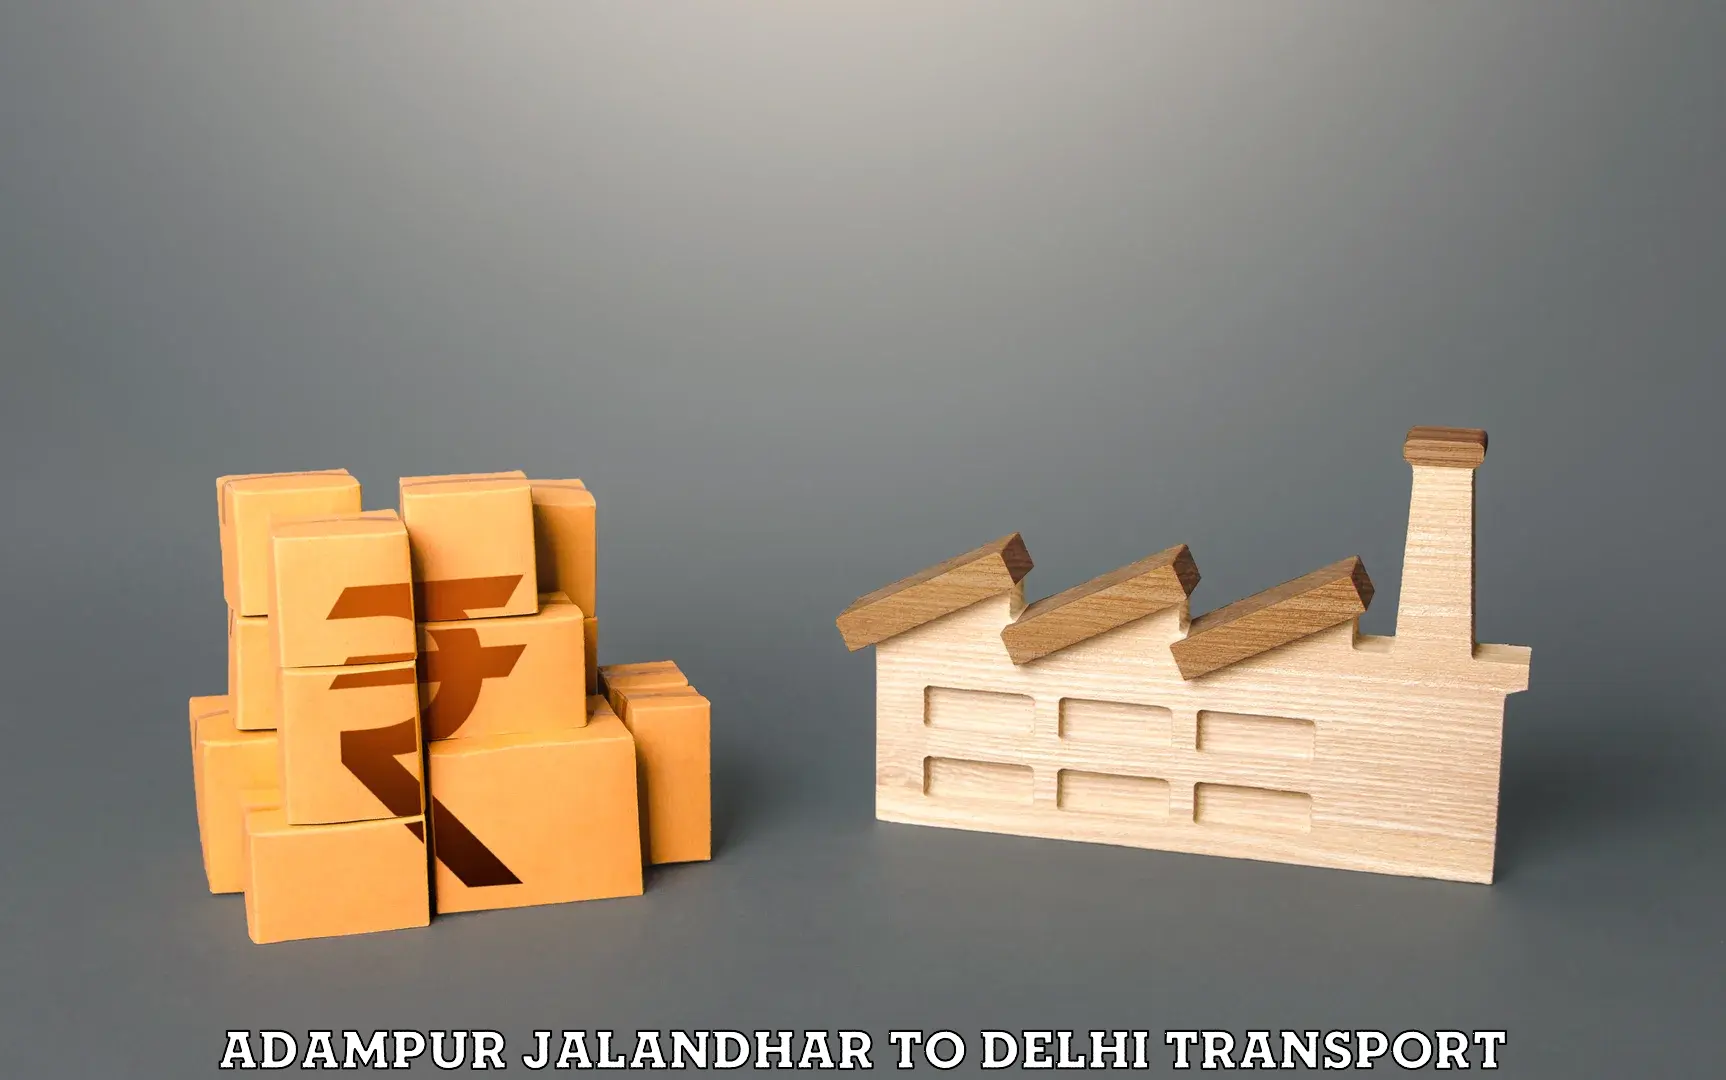 Online transport service Adampur Jalandhar to NIT Delhi